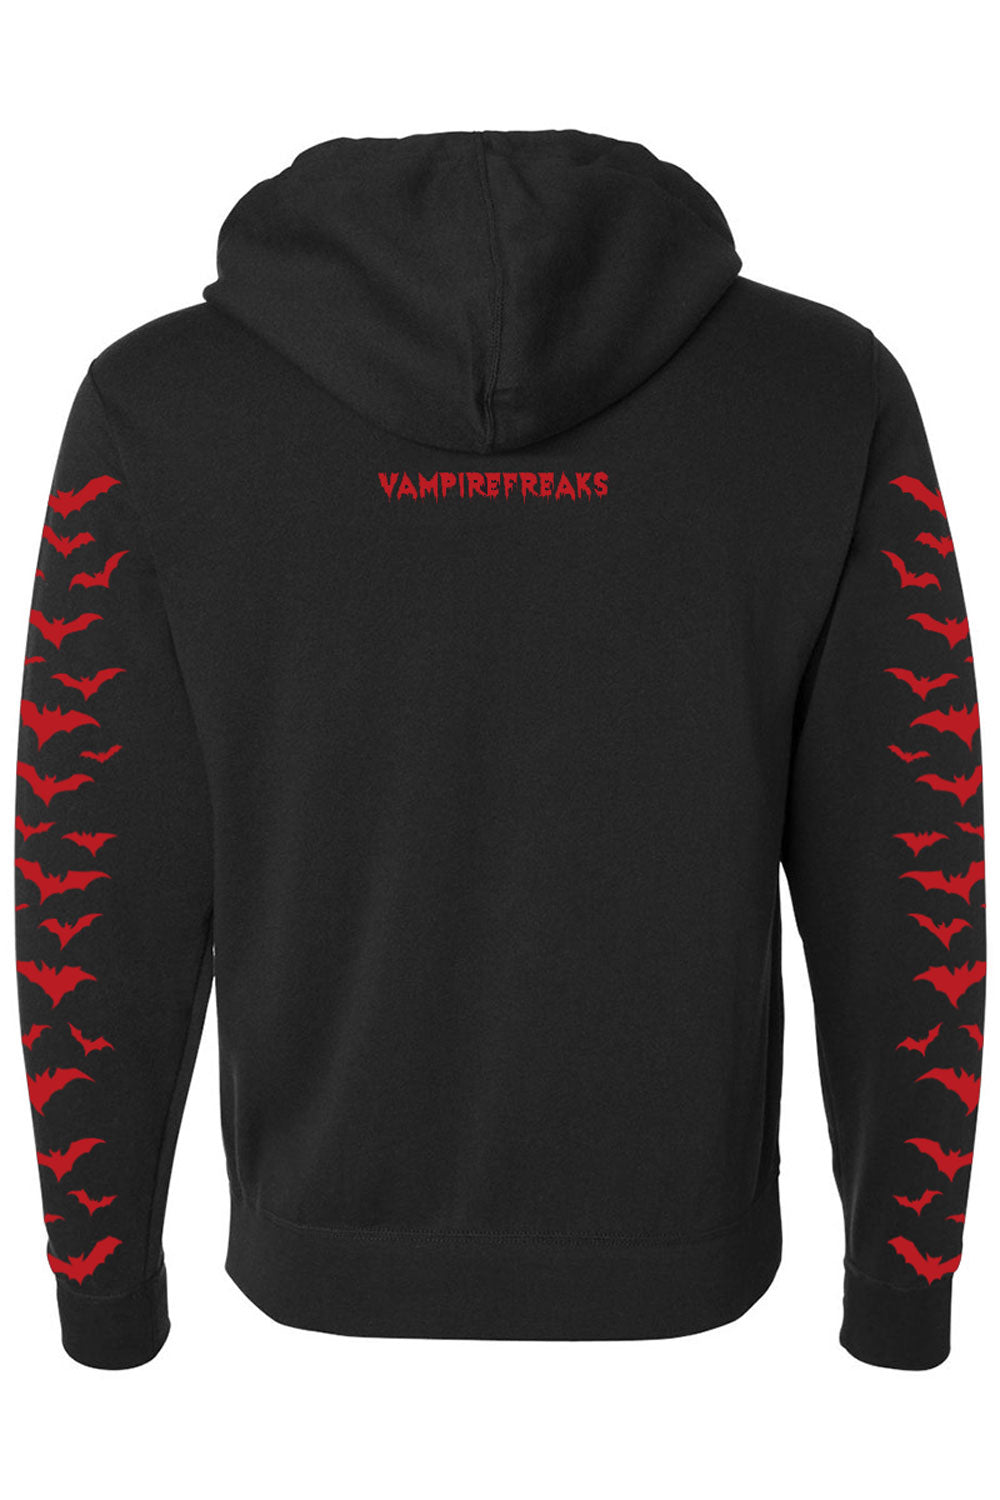 Nosferatu Hoodie w/ Red Bat Sleeves [Zipper or Pullover]